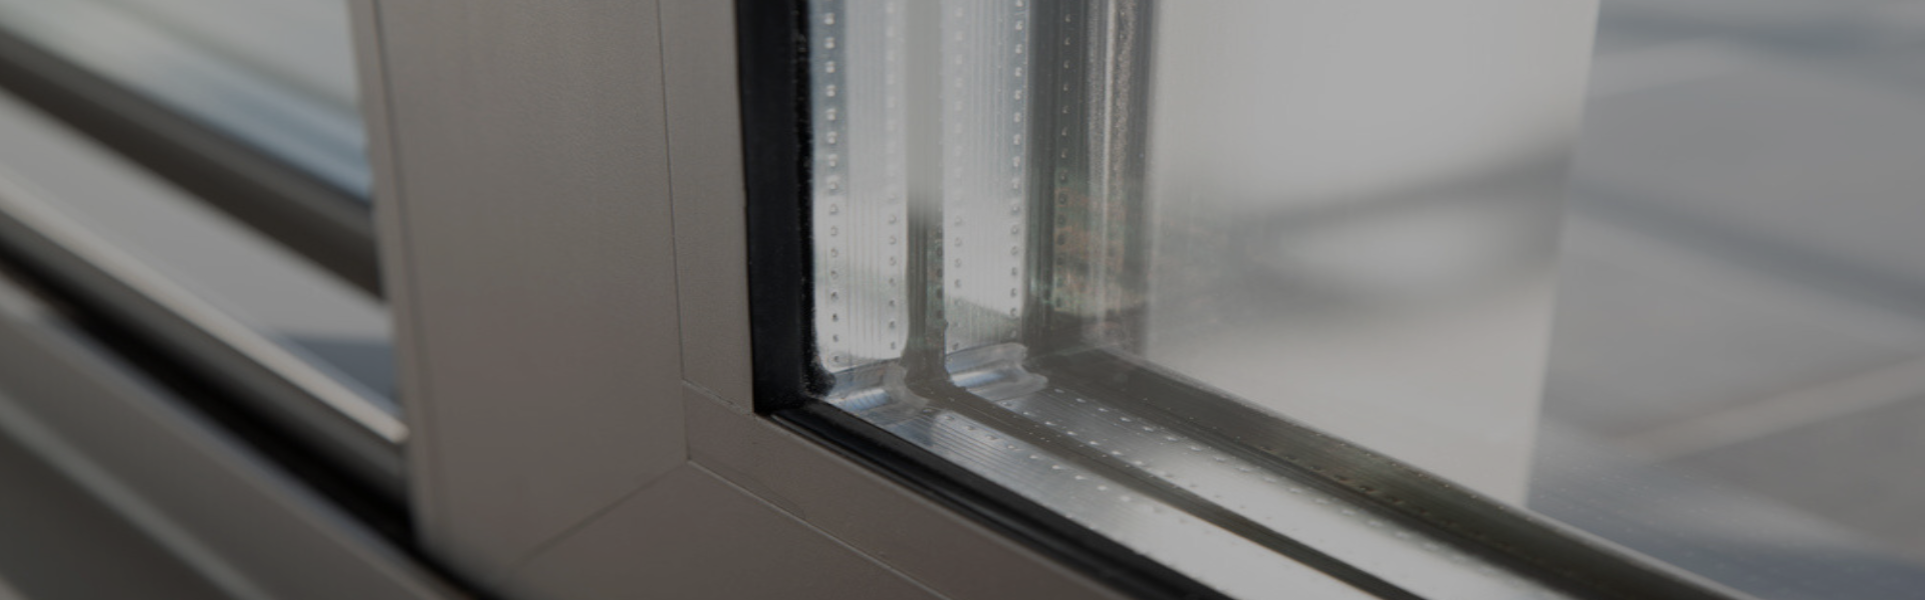 Slider Aluminium Windows, Glaziers in Brompton, SW3